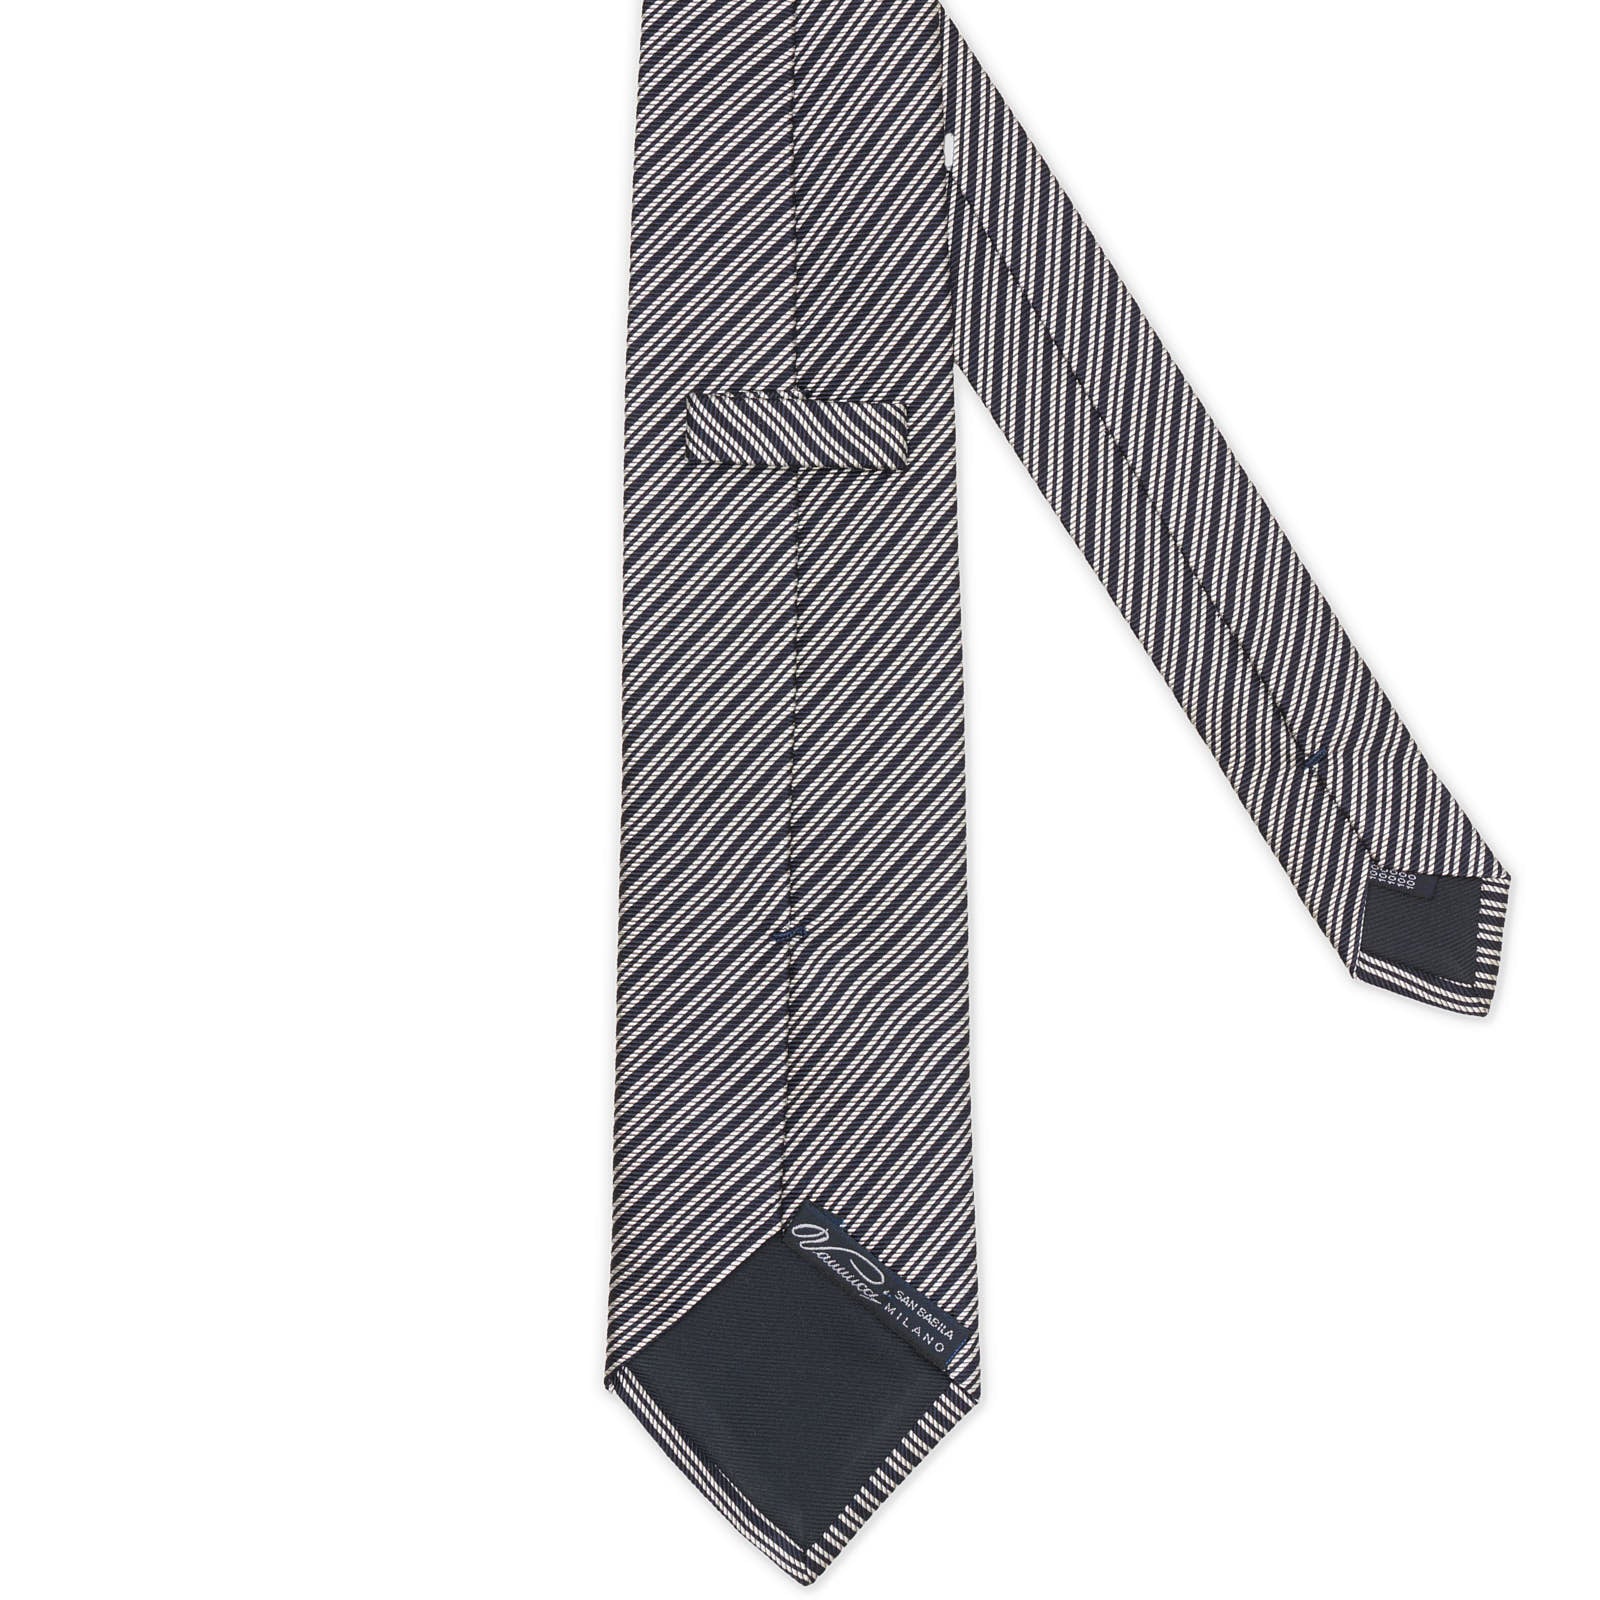 VANNUCCI Navy Blue and White Regimental Striped Silk Tie NEW